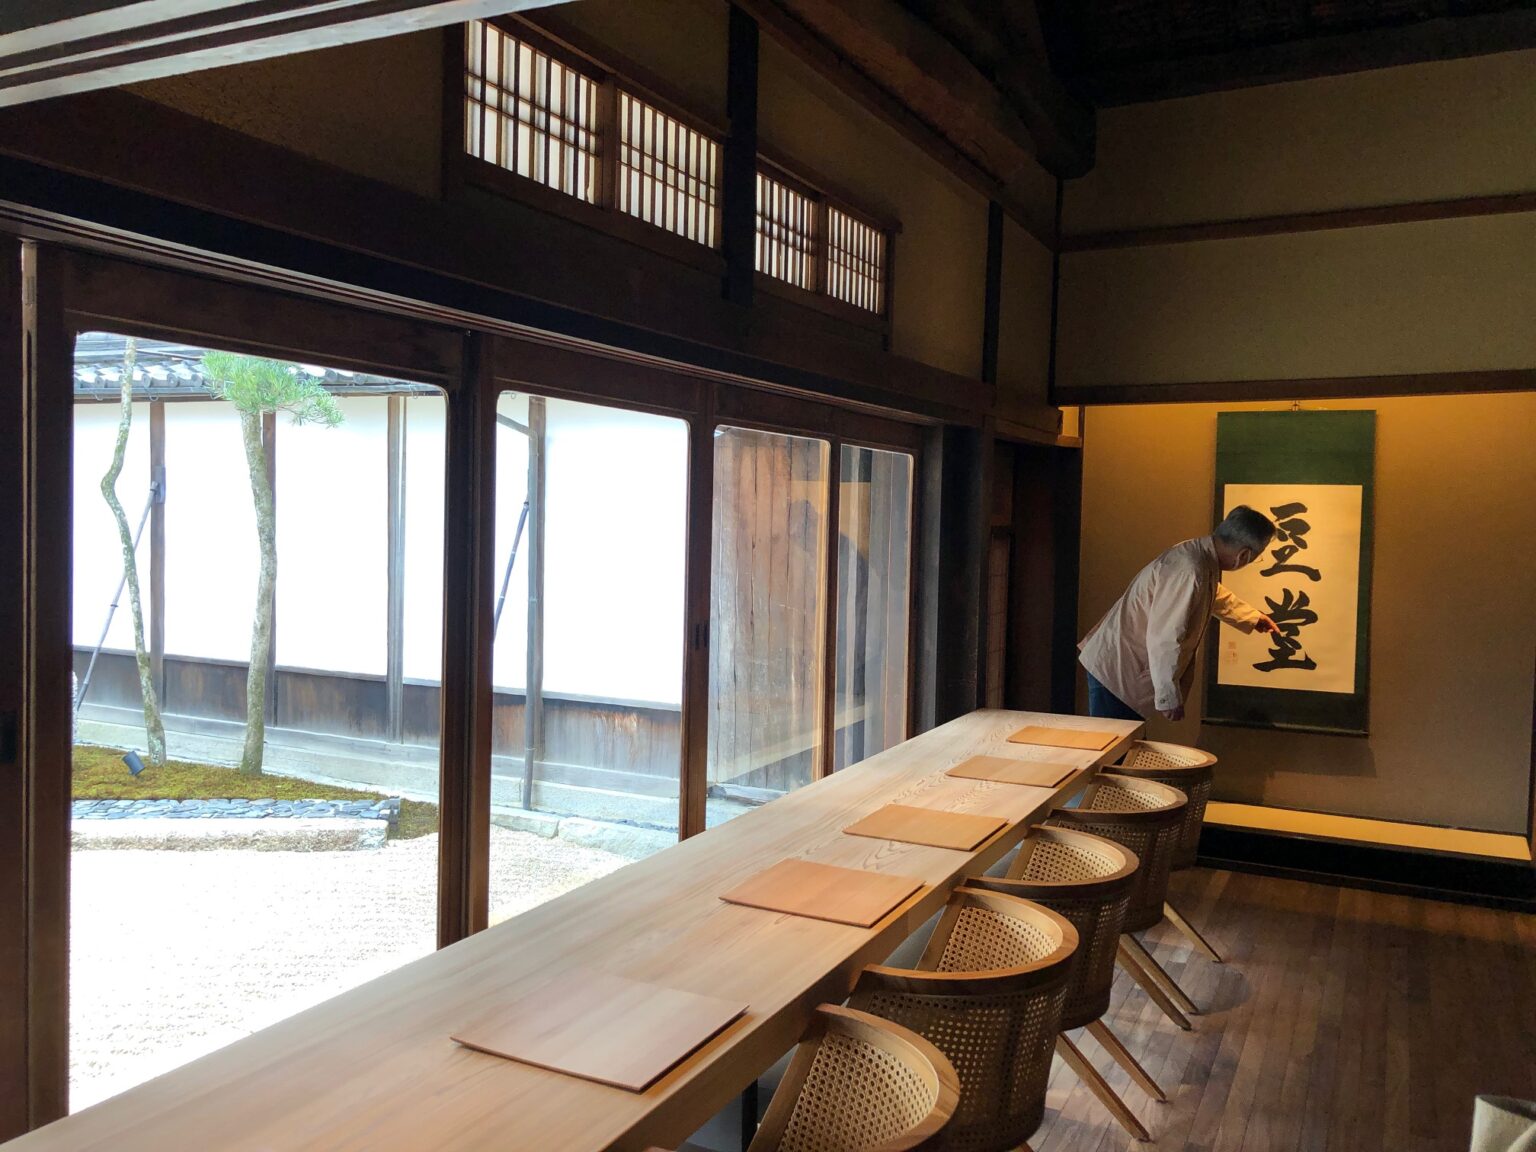 カフェの名前「小田垣豆堂」は杉本博司が命名。